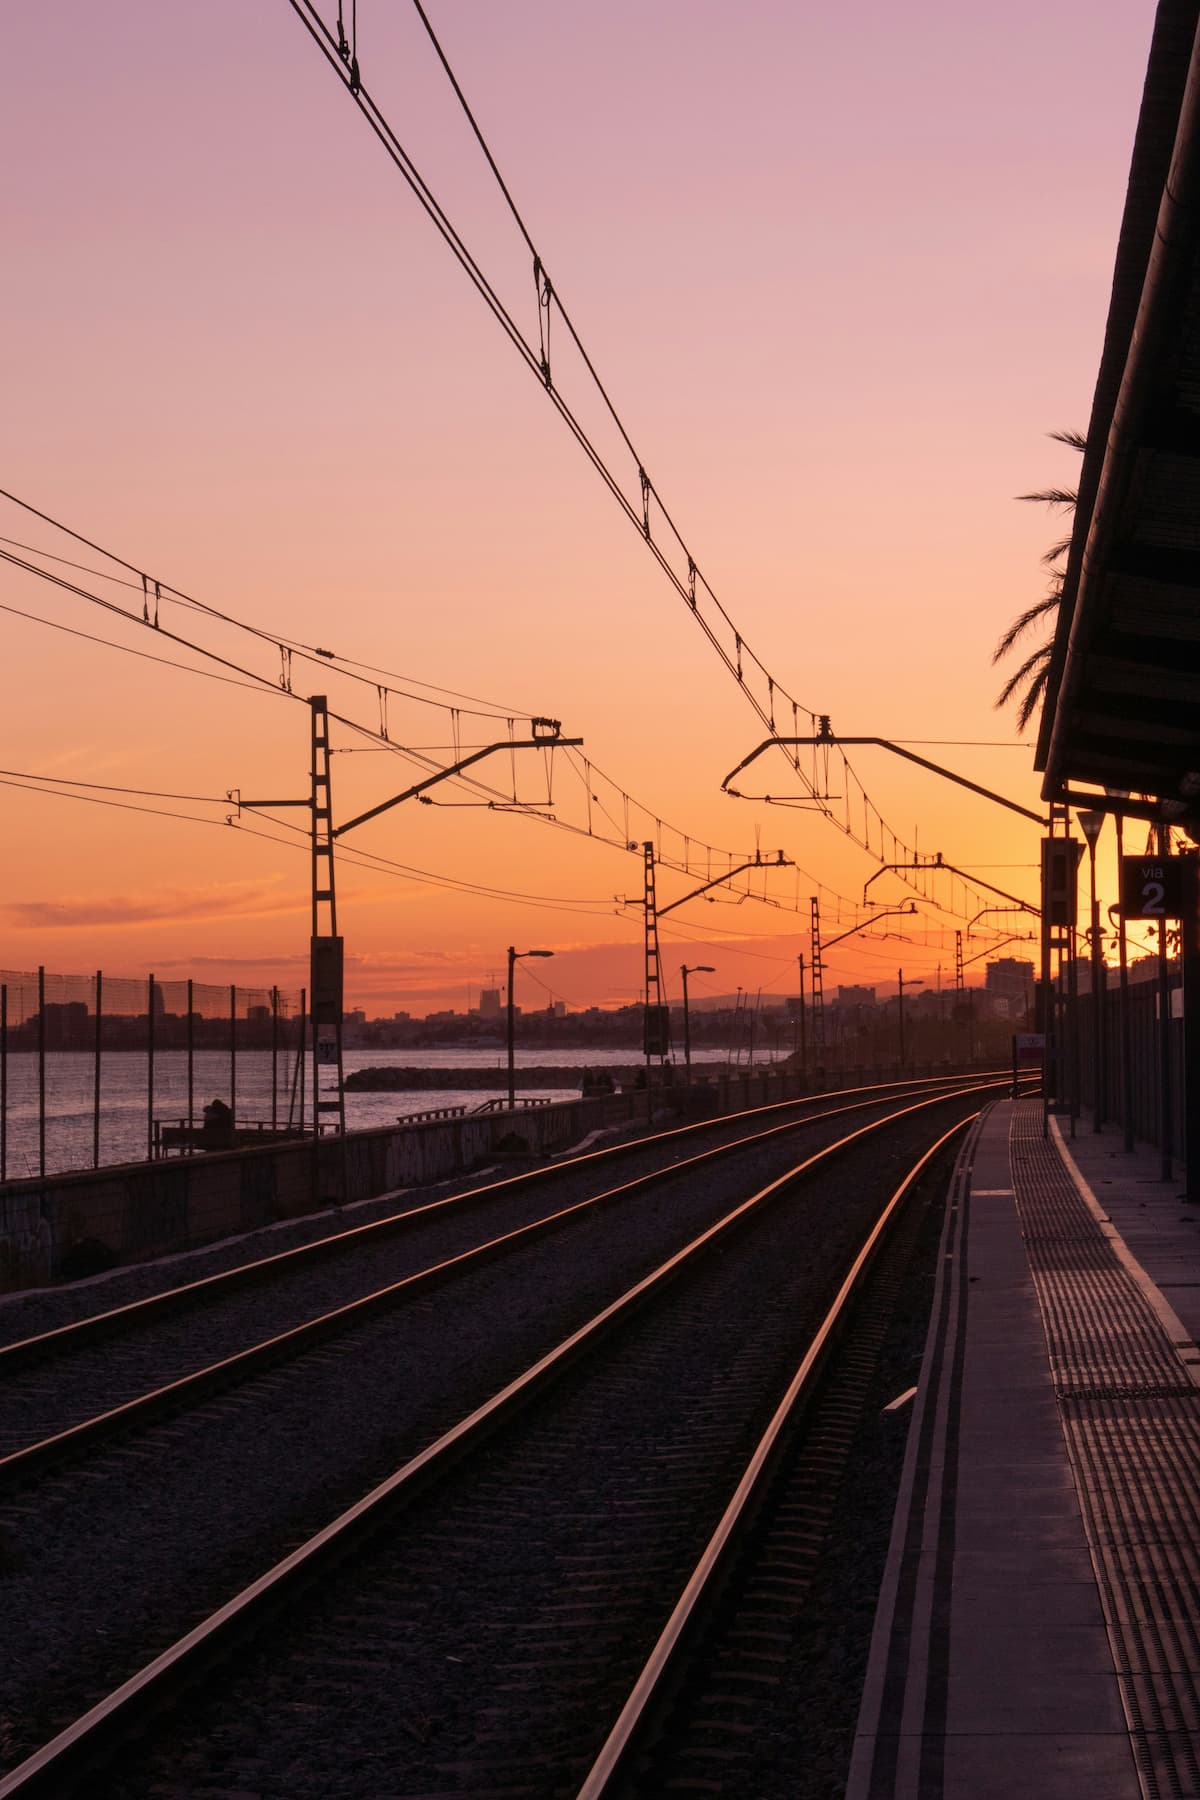 Uma ferrovia fotografada no fim da tarde